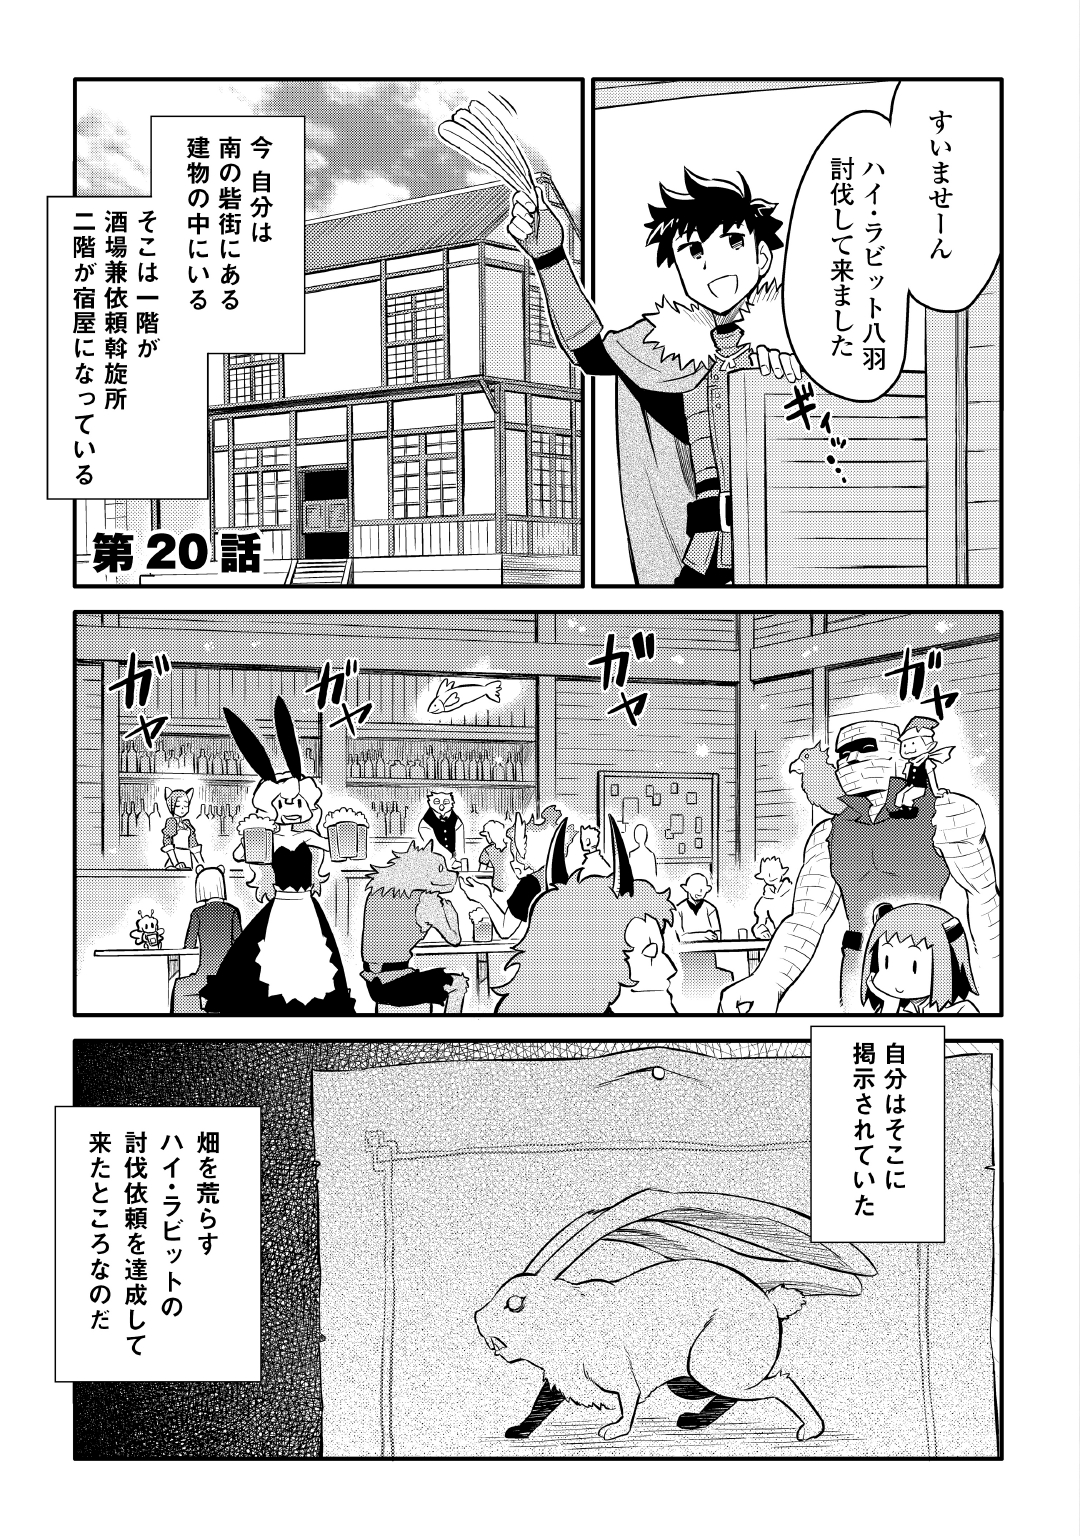 Toaru Ossan no VRMMO Katsudouki - Chapter 20 - Page 1